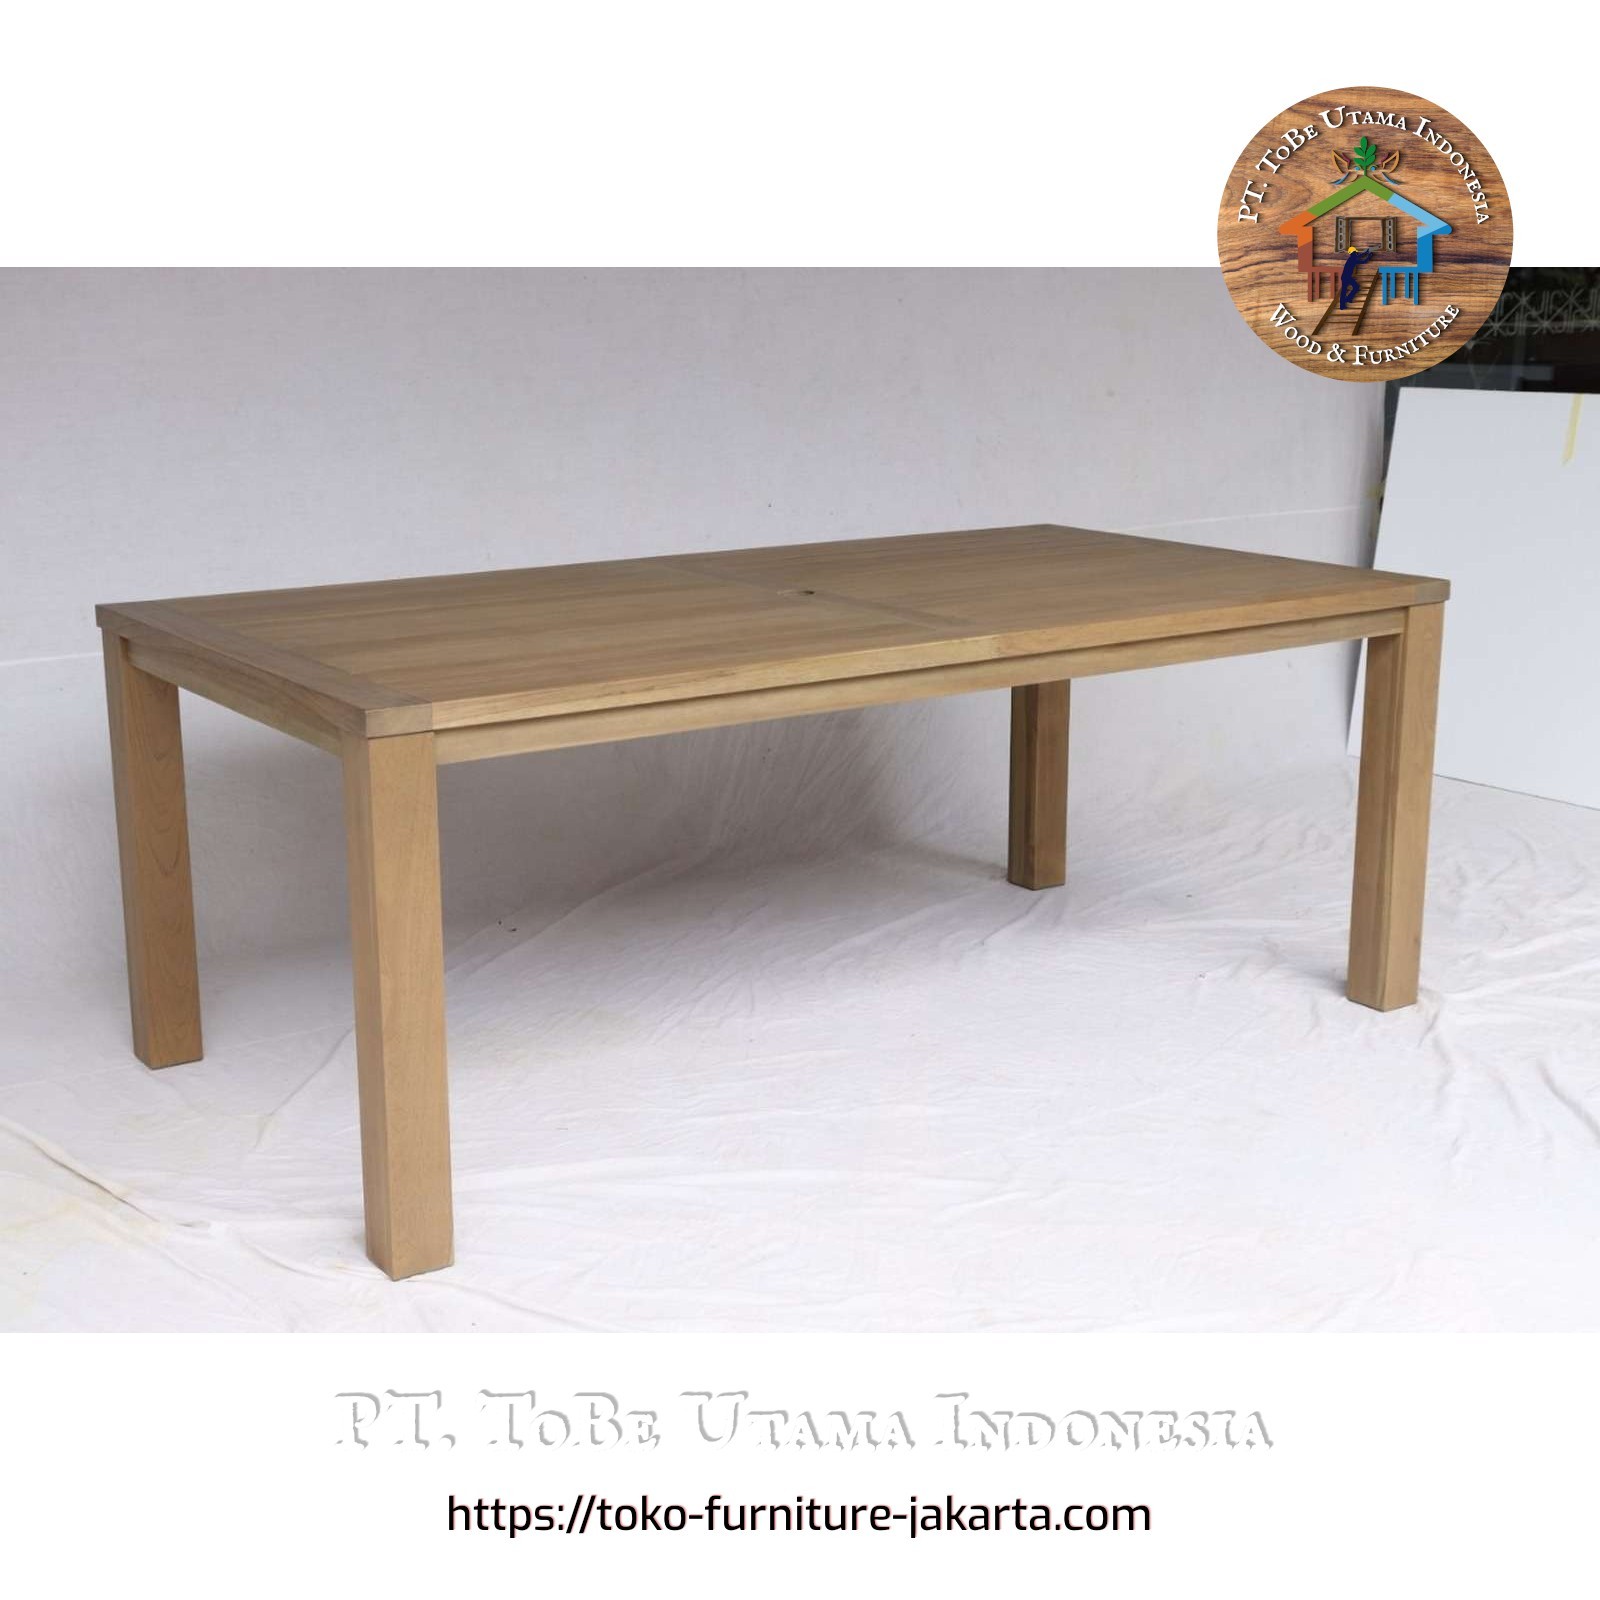 Dining Room - Dining Tables: KJ Teak Light Dining Table made of teakwood, mahogany wood (image 1 of 1).